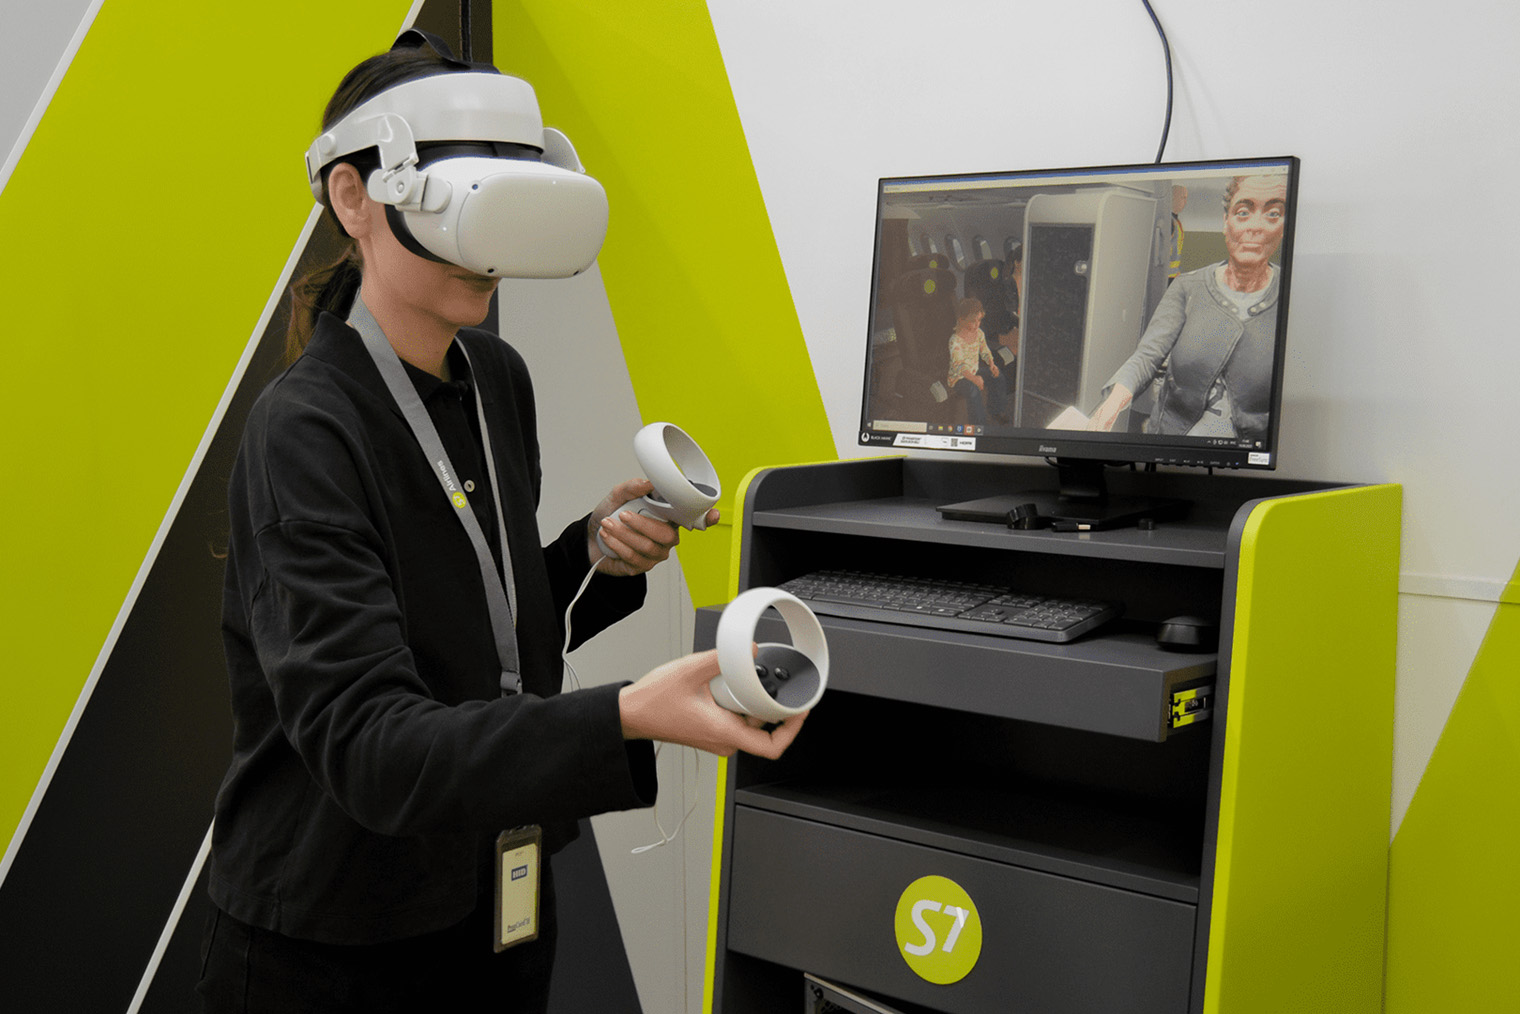 VR⁠-⁠тренажер для бортпроводников в S7 позволяет пообщаться с виртуальными пассажирами